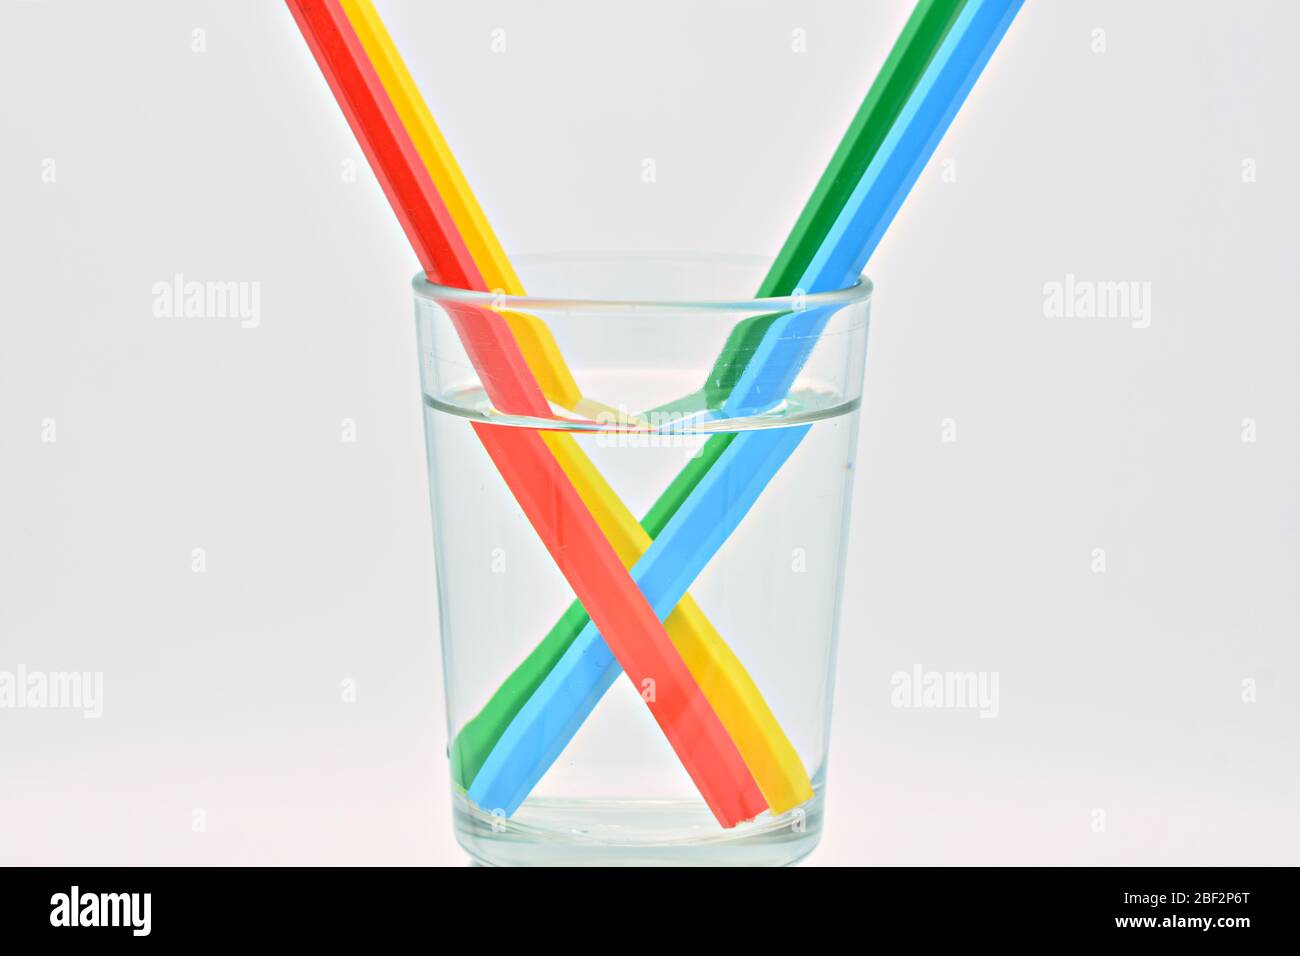 Crayons de couleur bleu, jaune, vert et rouge, à l'intérieur d'un verre rempli d'eau, explication de réfraction de la lumière Banque D'Images